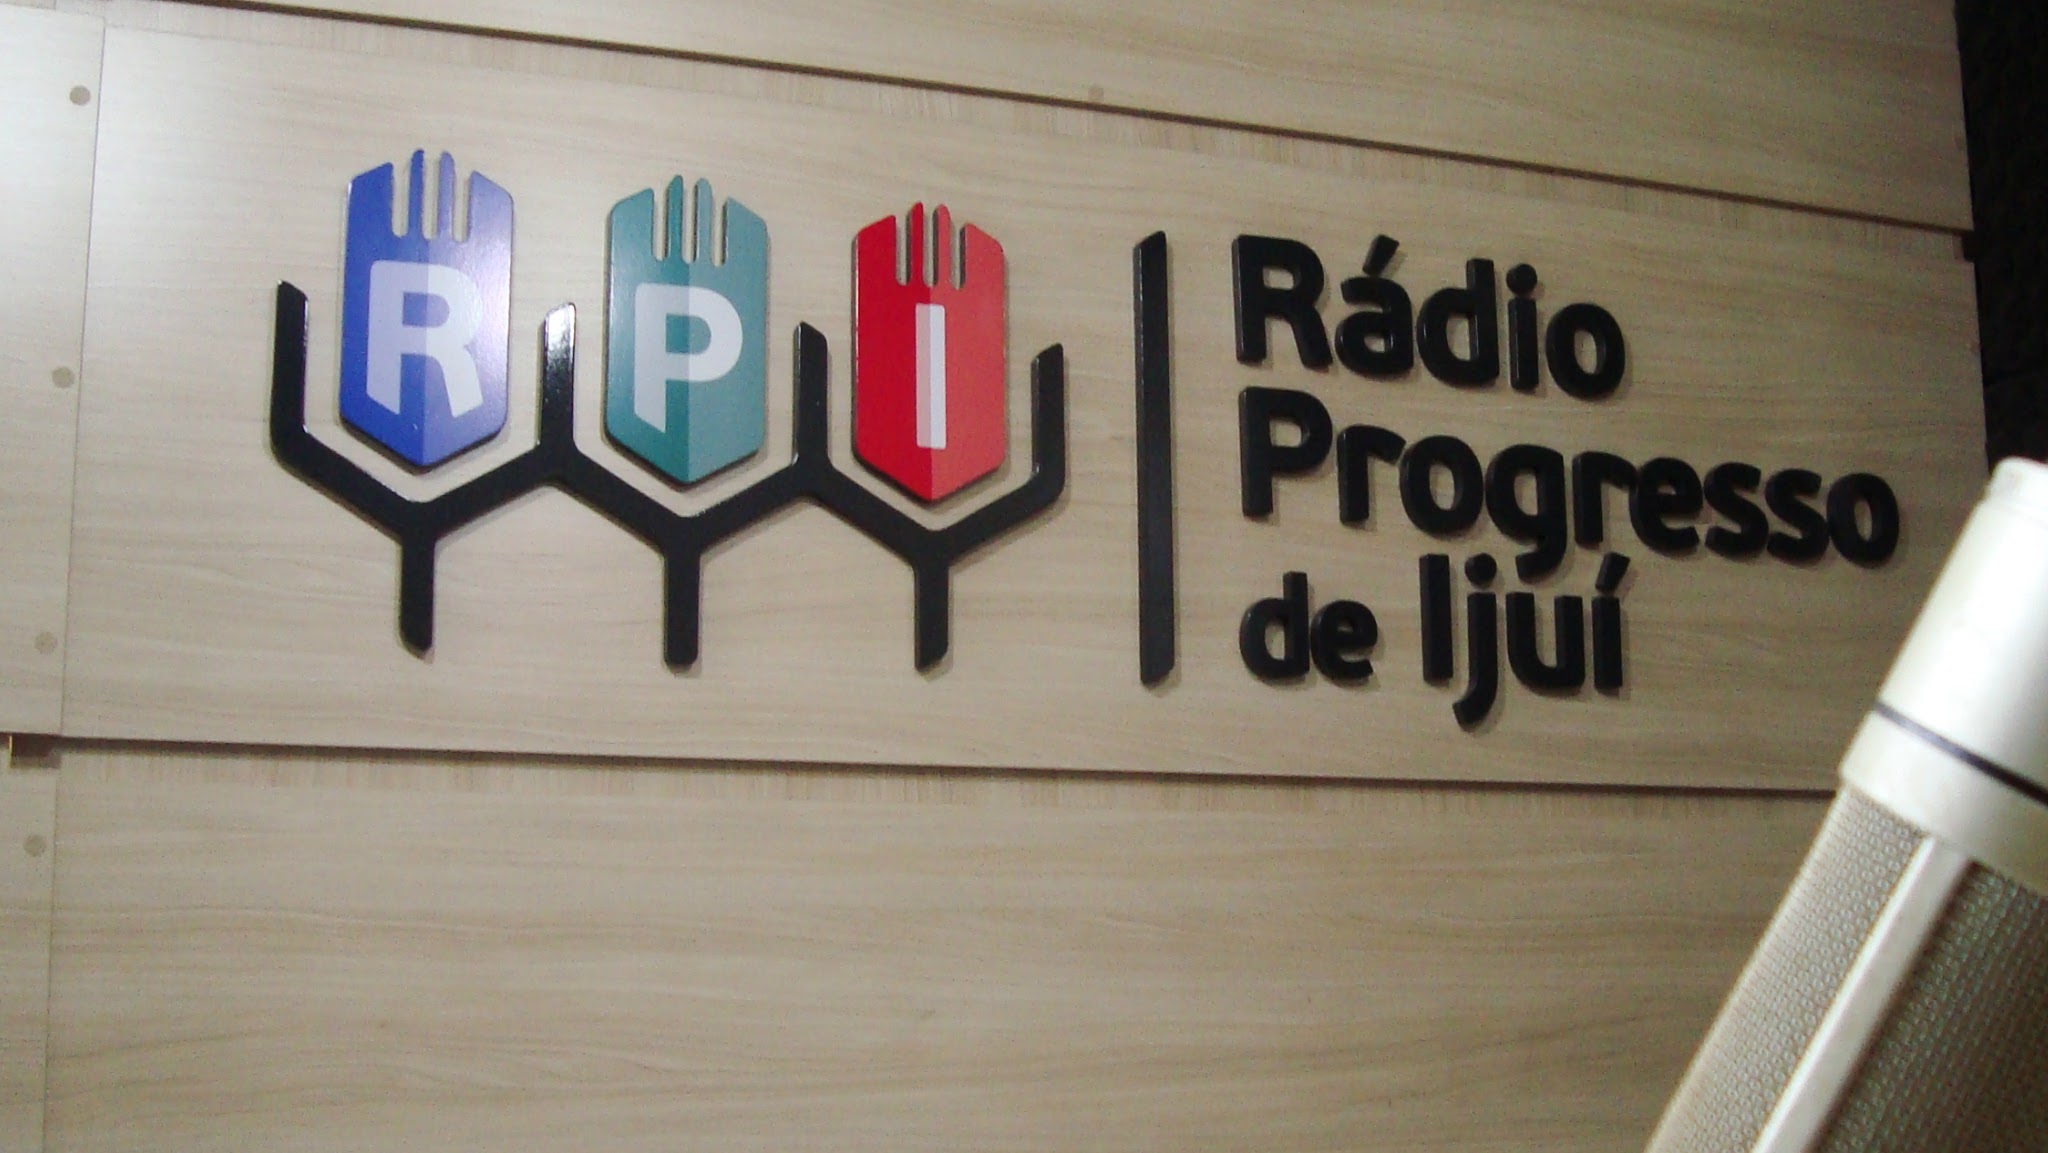 Avaliação Chill betRPI – Rádio Progresso de Ijuí